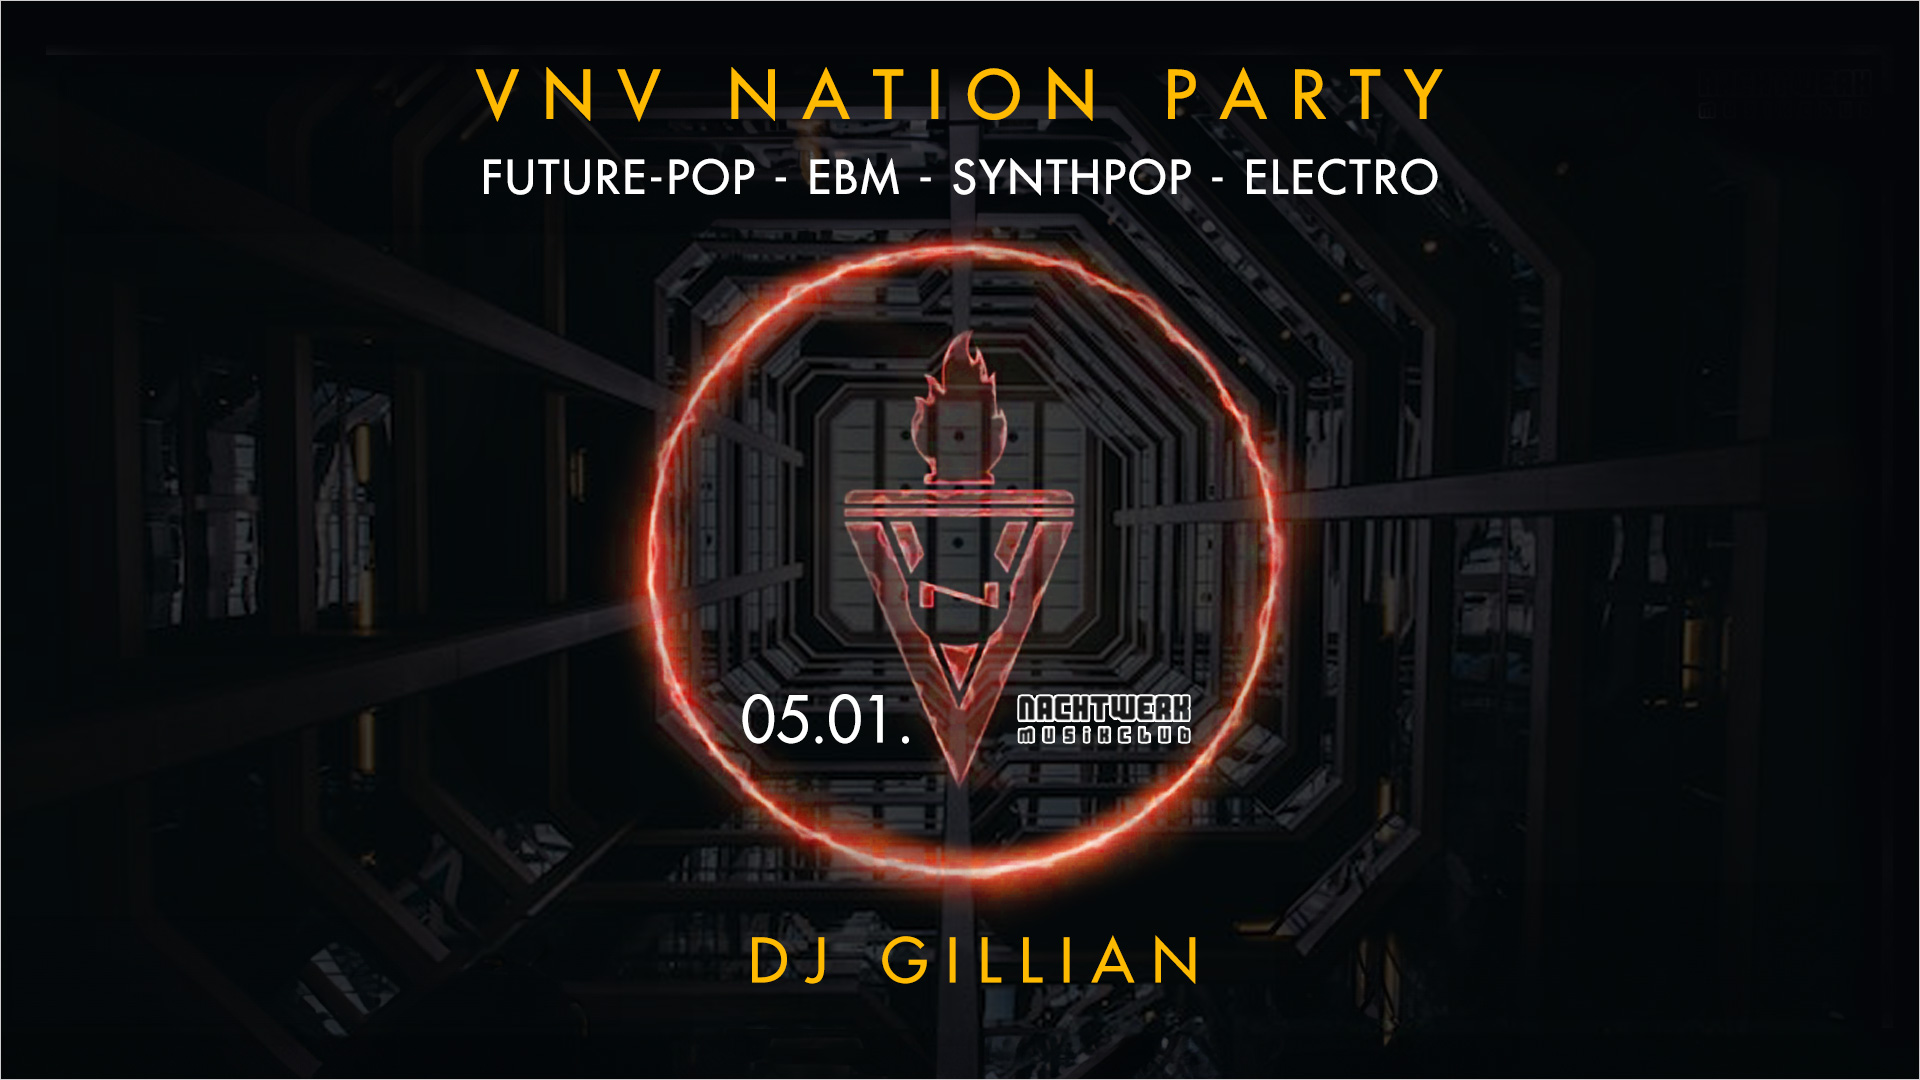 VNV NATION Party mit DJ GILLIAN im Nachtwerk Karlsruhe.